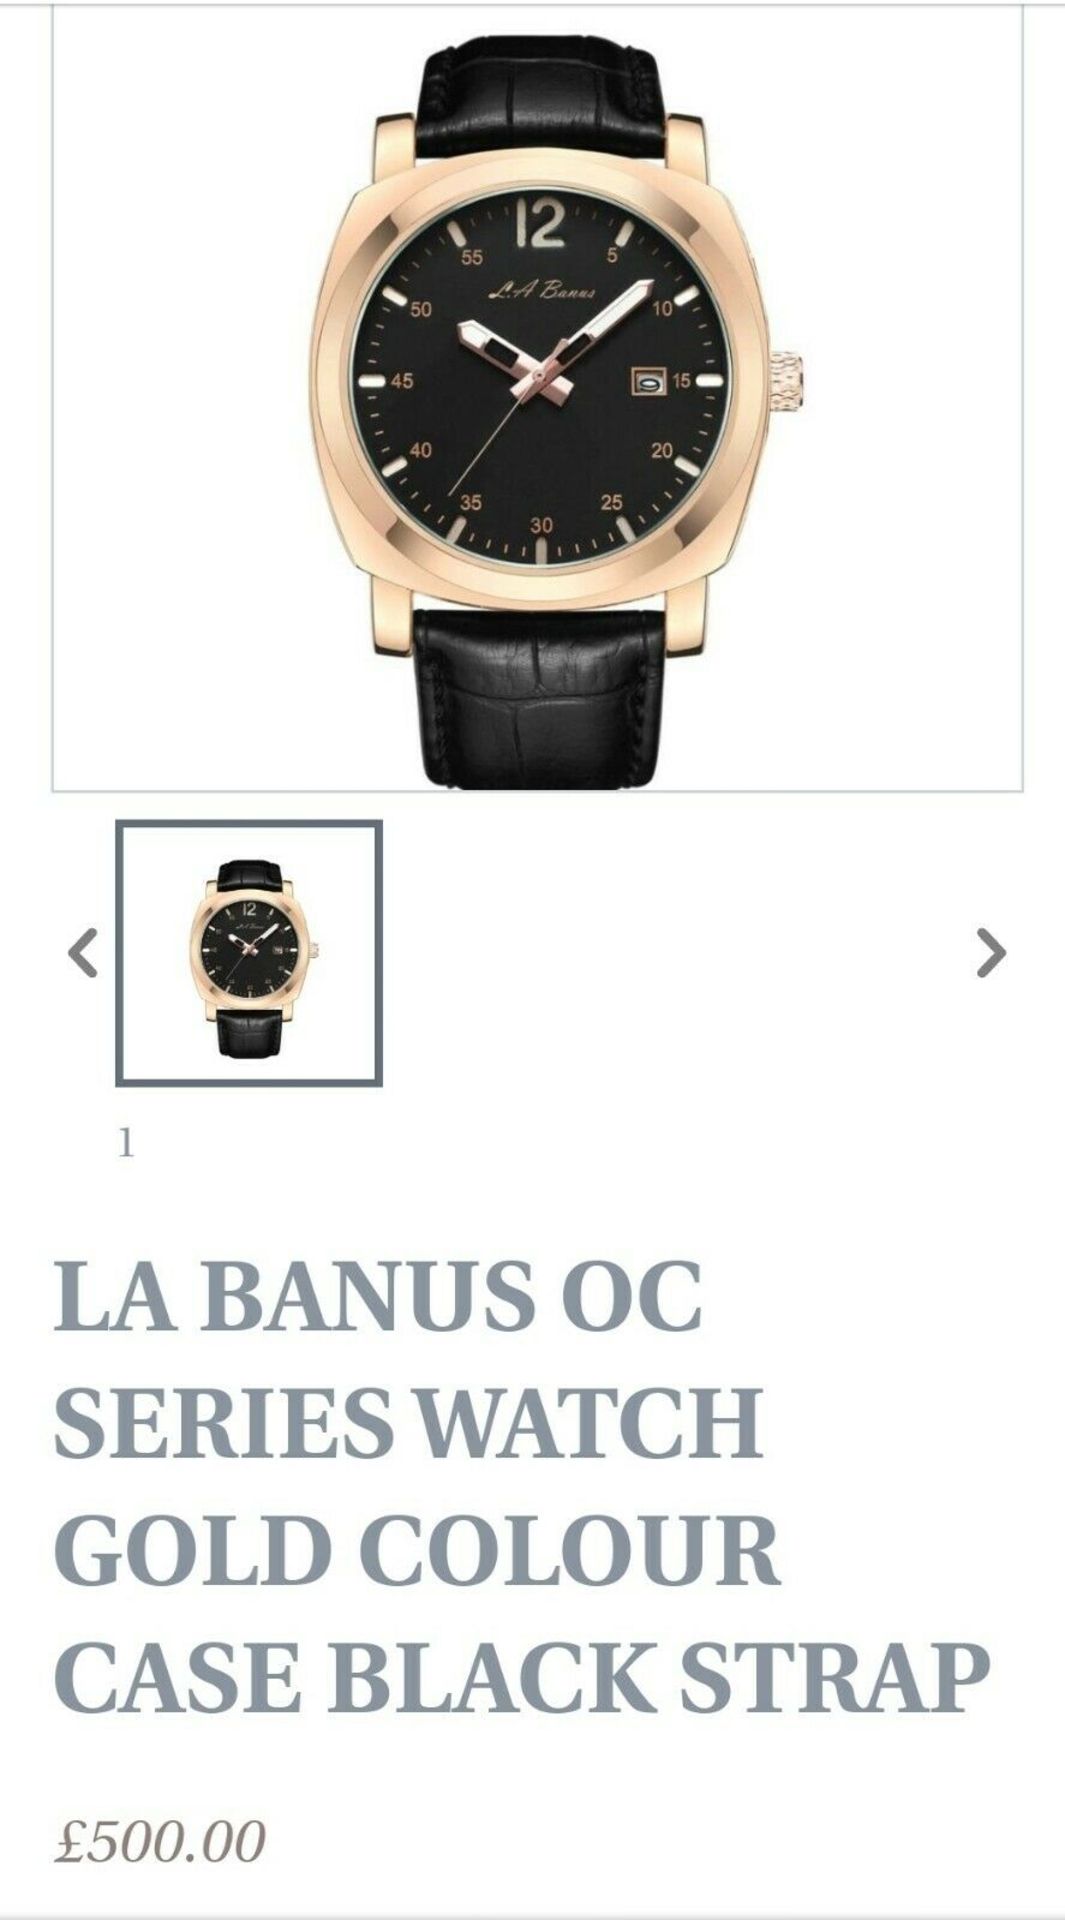 La Banus Oc Series Watch Gold Colour Case Black Strap - Image 2 of 6